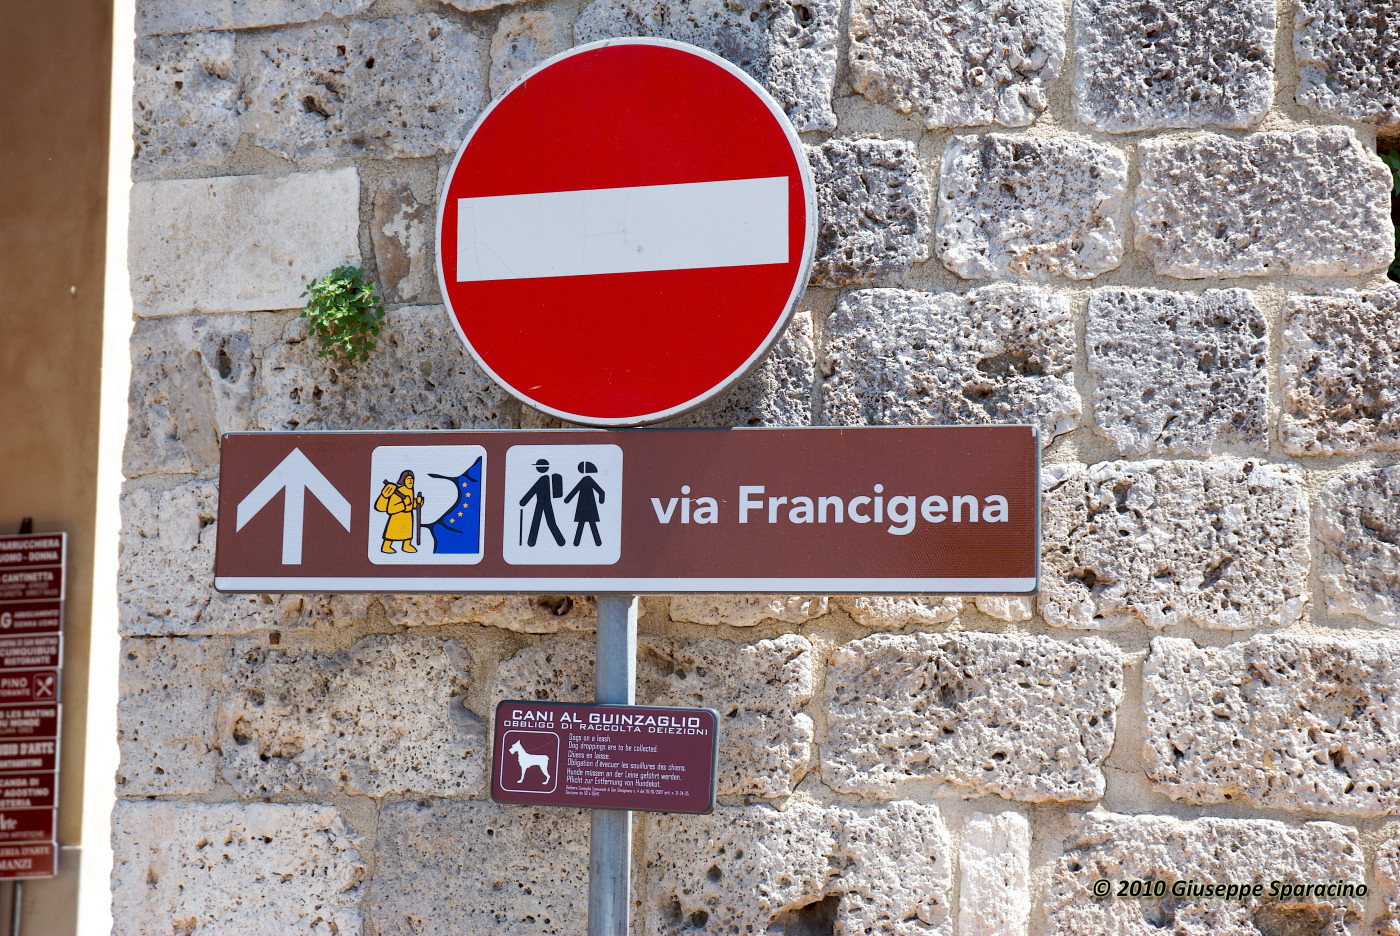 En un próximo post te daremos detalles de cómo peregrinar a Roma caminando la Vía Francígena (necesitas tres meses por lo menos para cubrirla, pero puedes hacerla por etapas; un poco cada año), y en qué época del año cruzar el Gran San Bernardo.